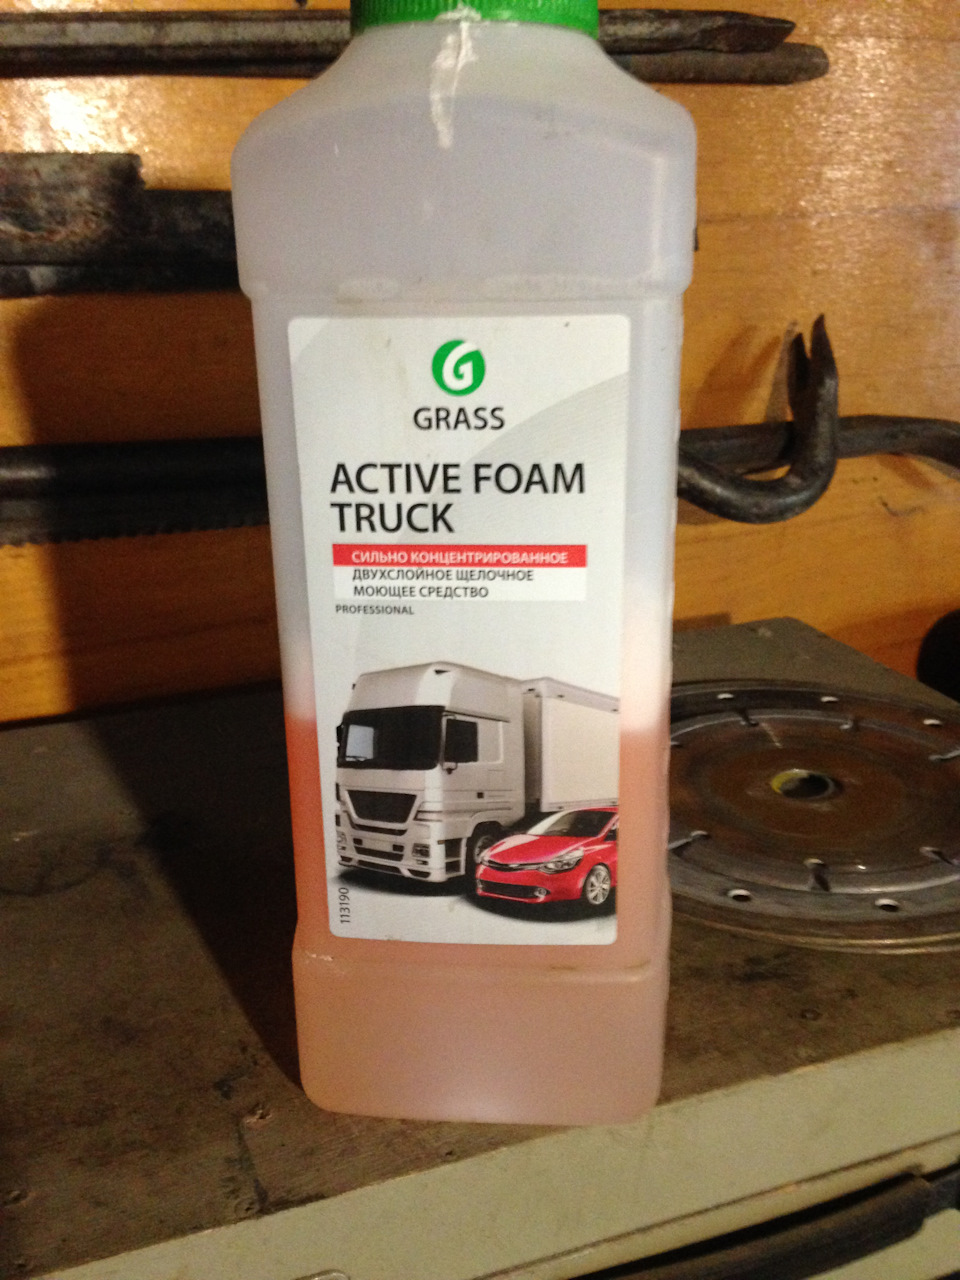 Grass active foam truck